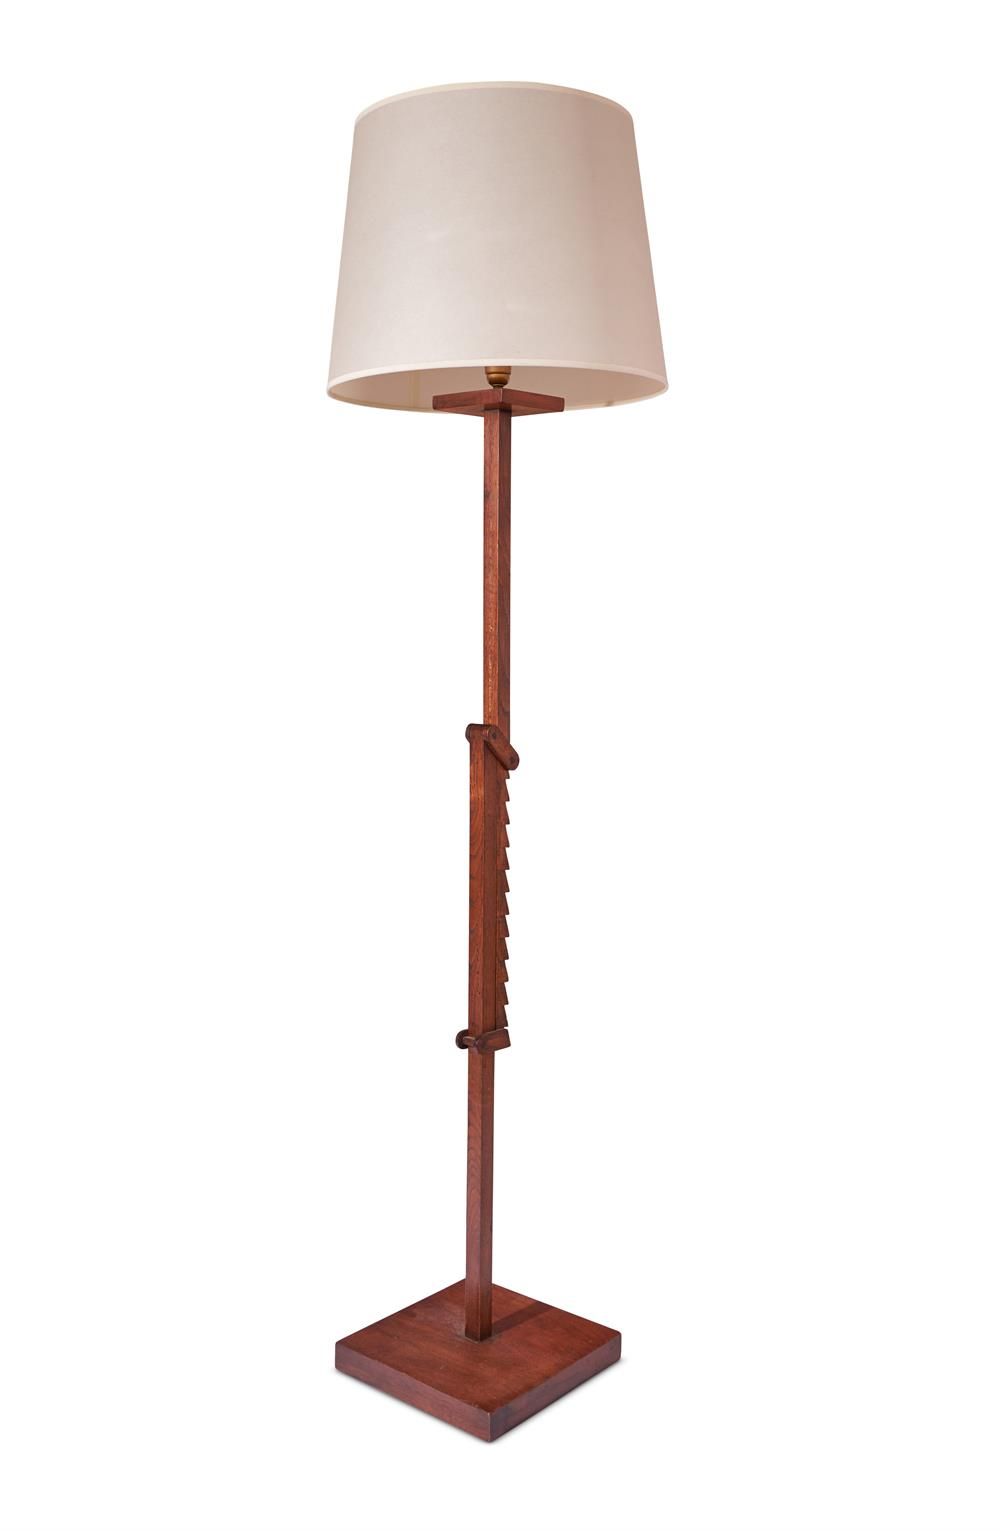 A WALNUT AND OAK ADJUSTABLE FLOOR LAMP, FRENCH LAMPE DE SOL EN NOYER ET CHÊNE AJ&hellip;